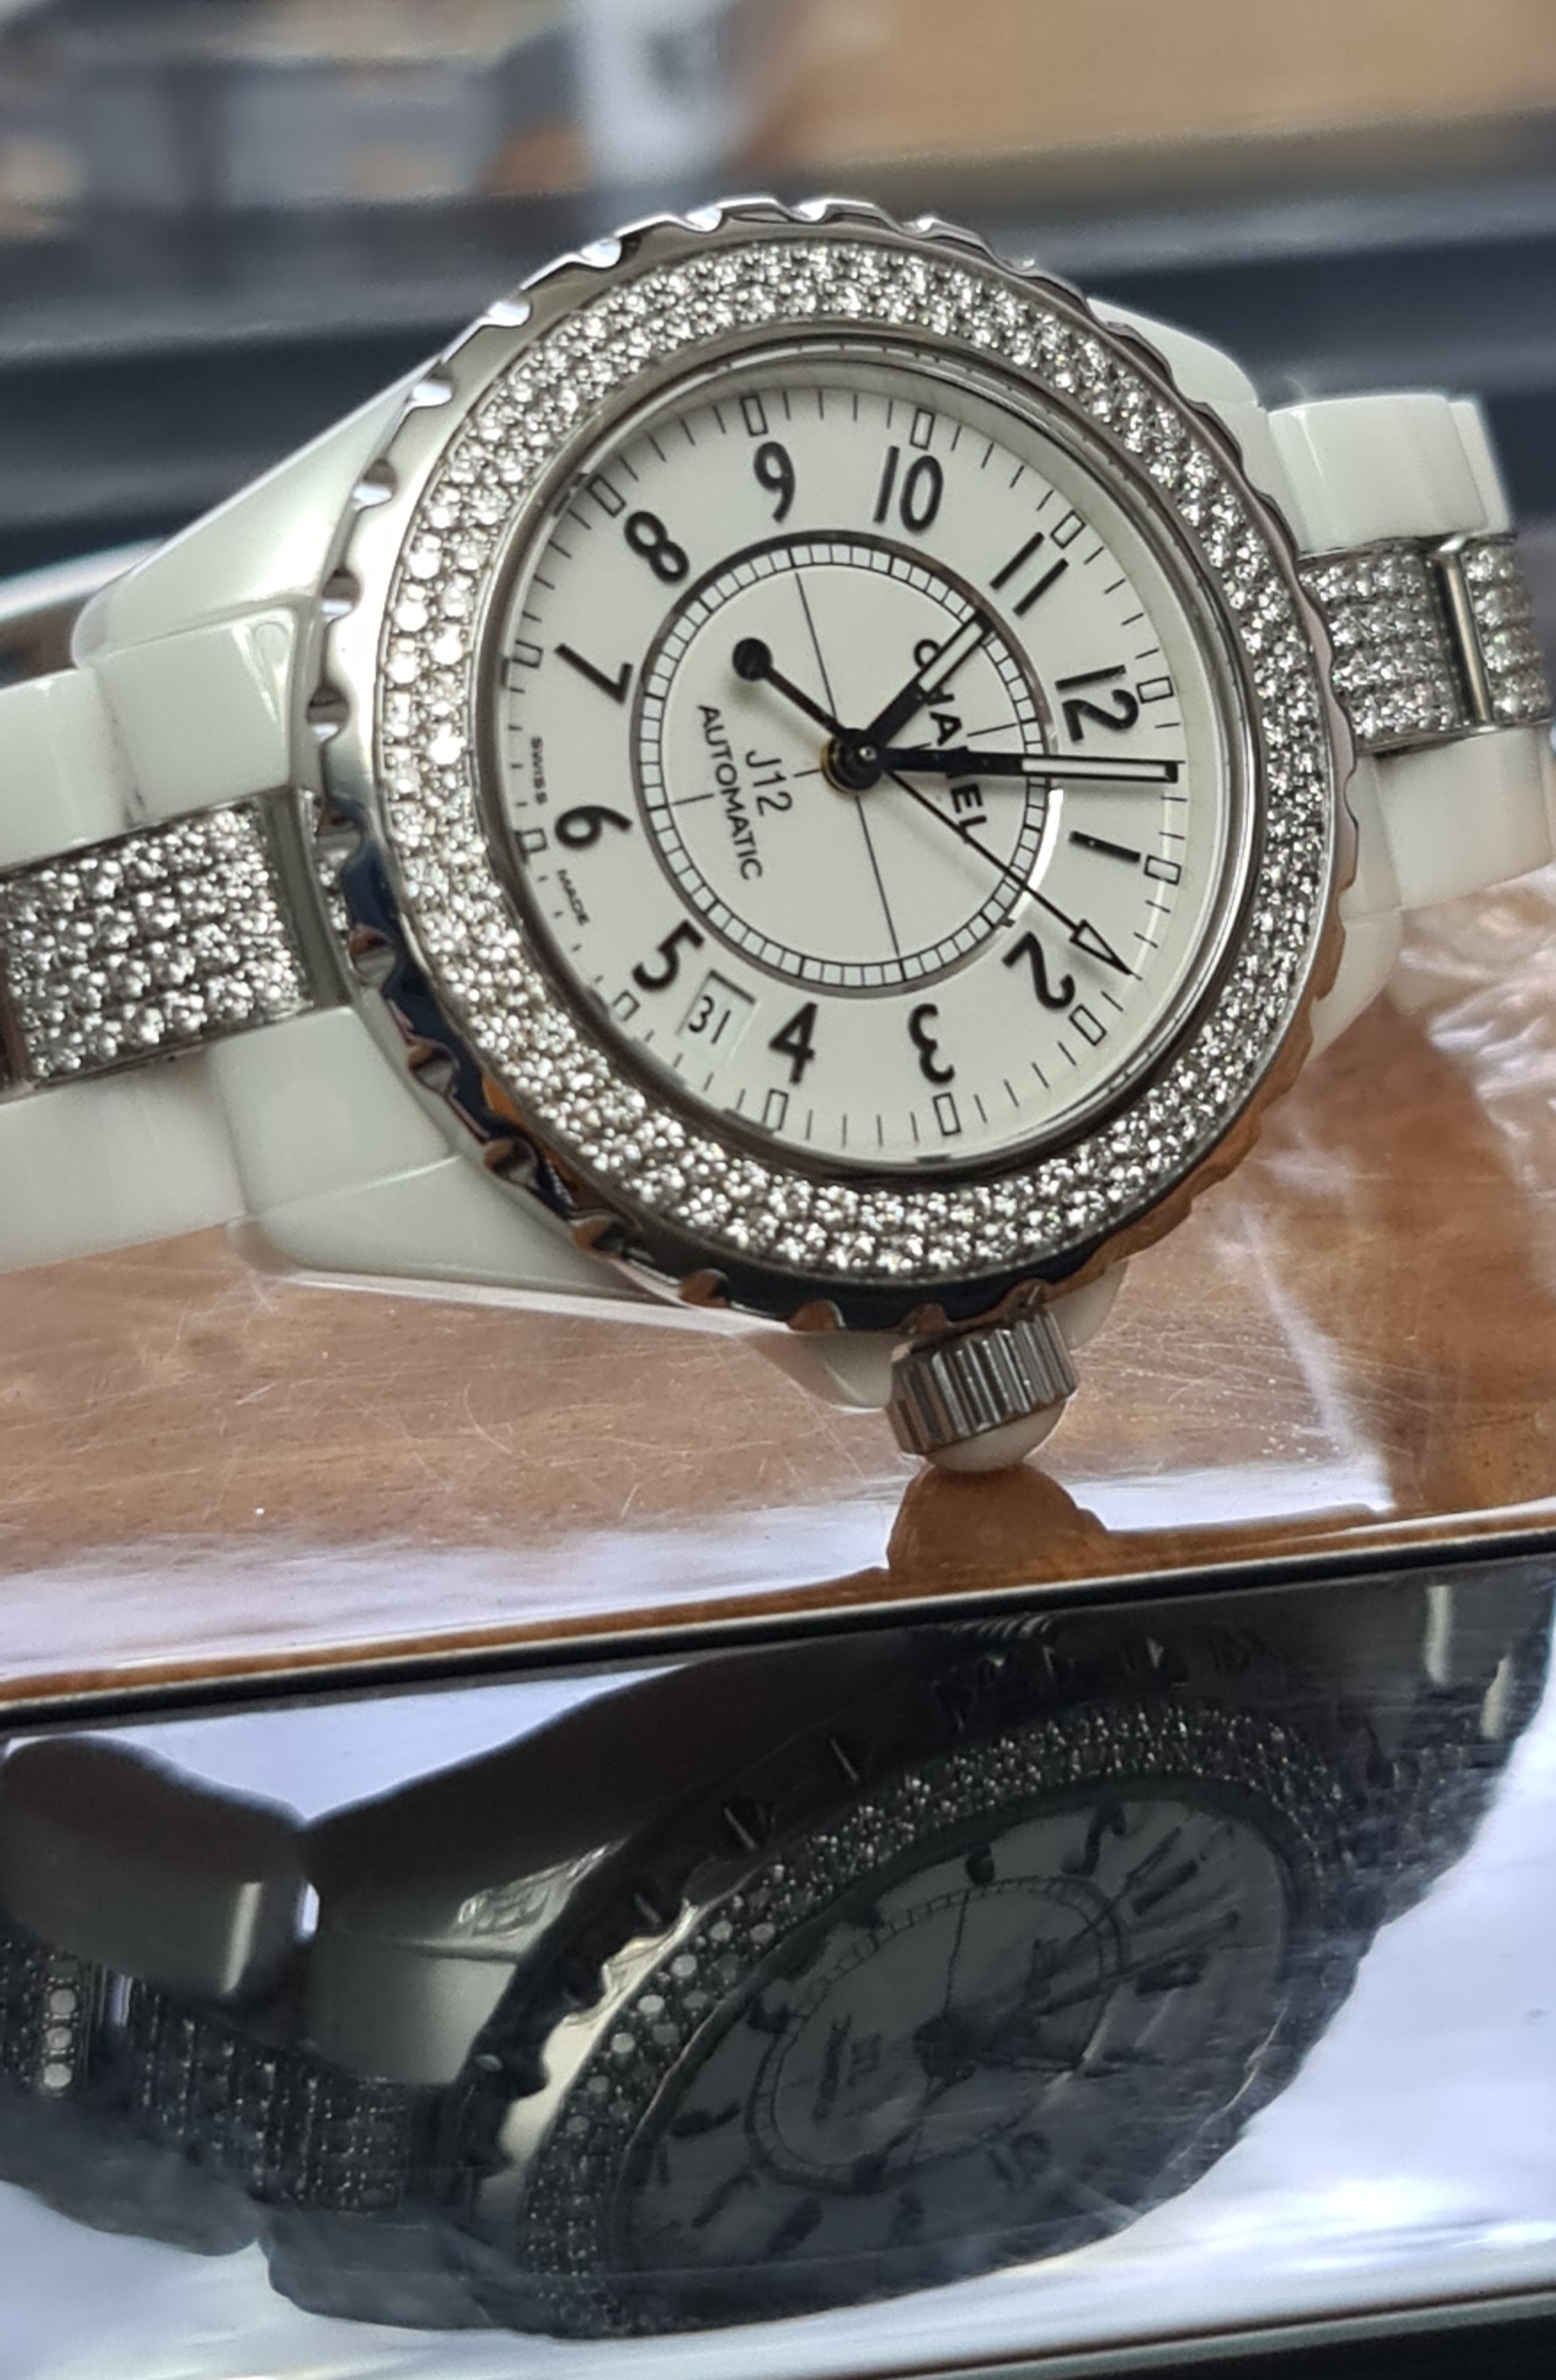 Chanel J12 Automatic H0970 купить в Москве цены на швейцарские часы в  Центральном Часовом Ломбарде